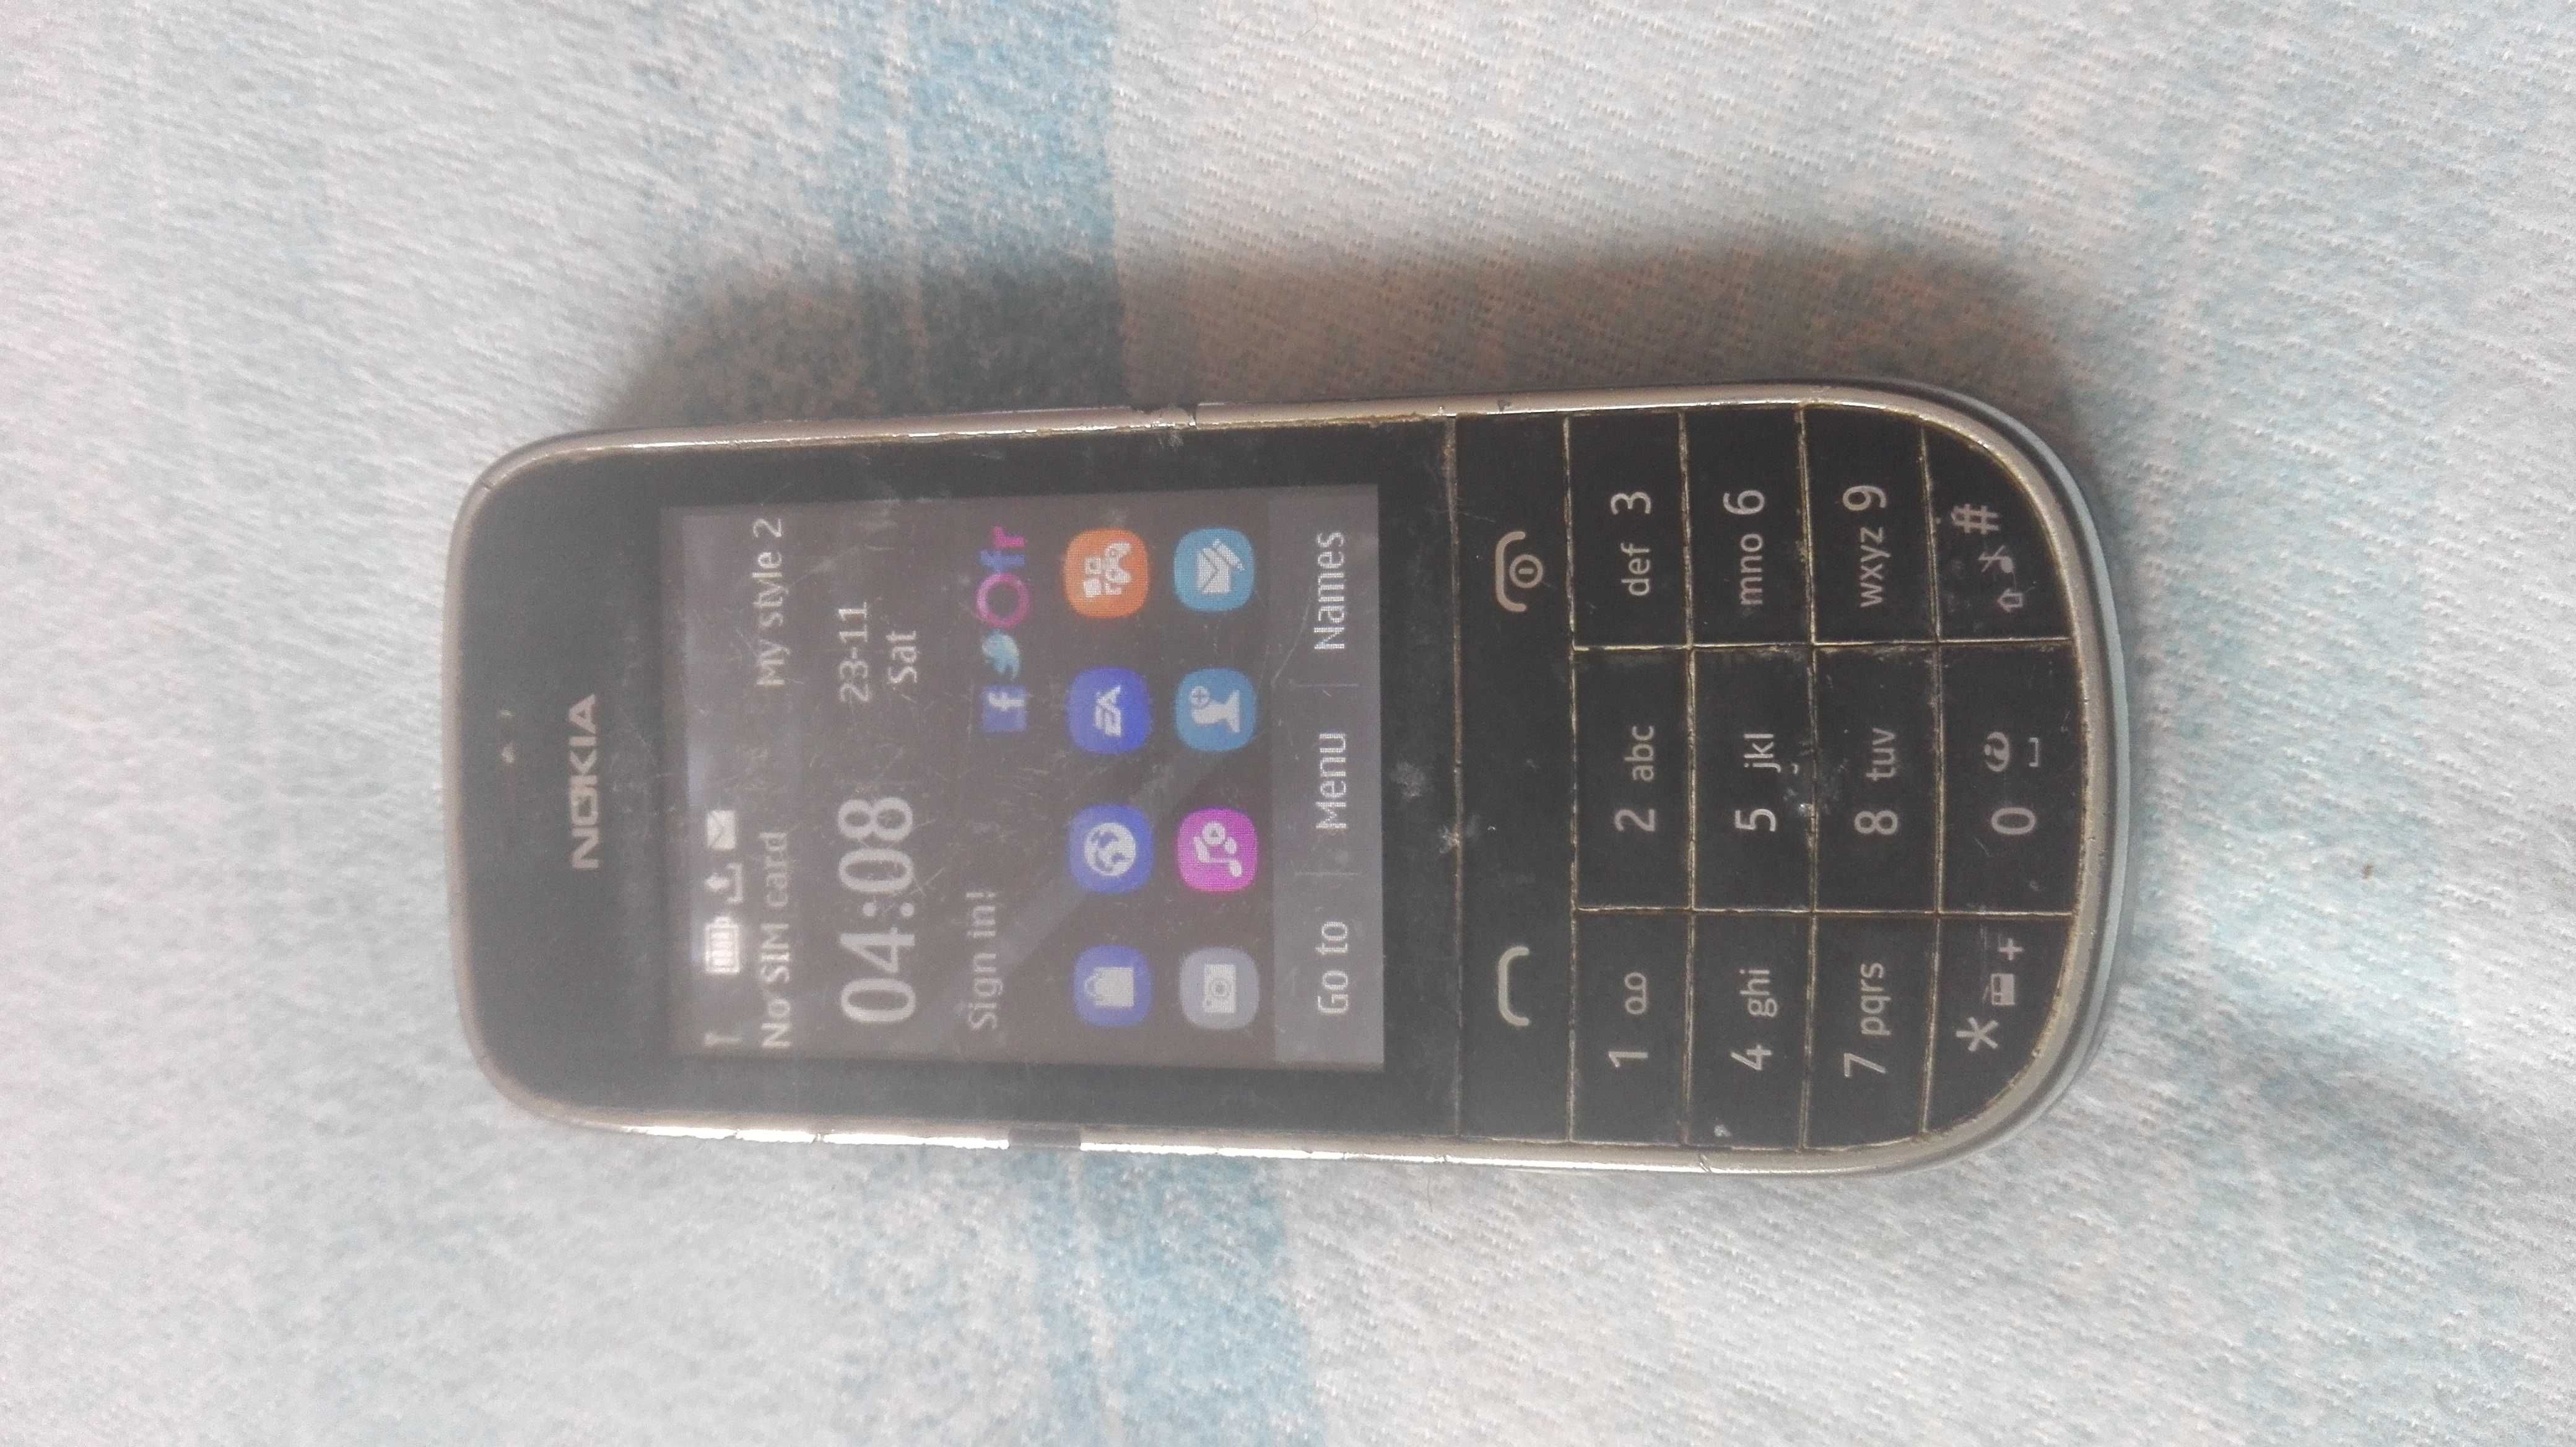 Telefon Nokia 203 funcțional de colecție